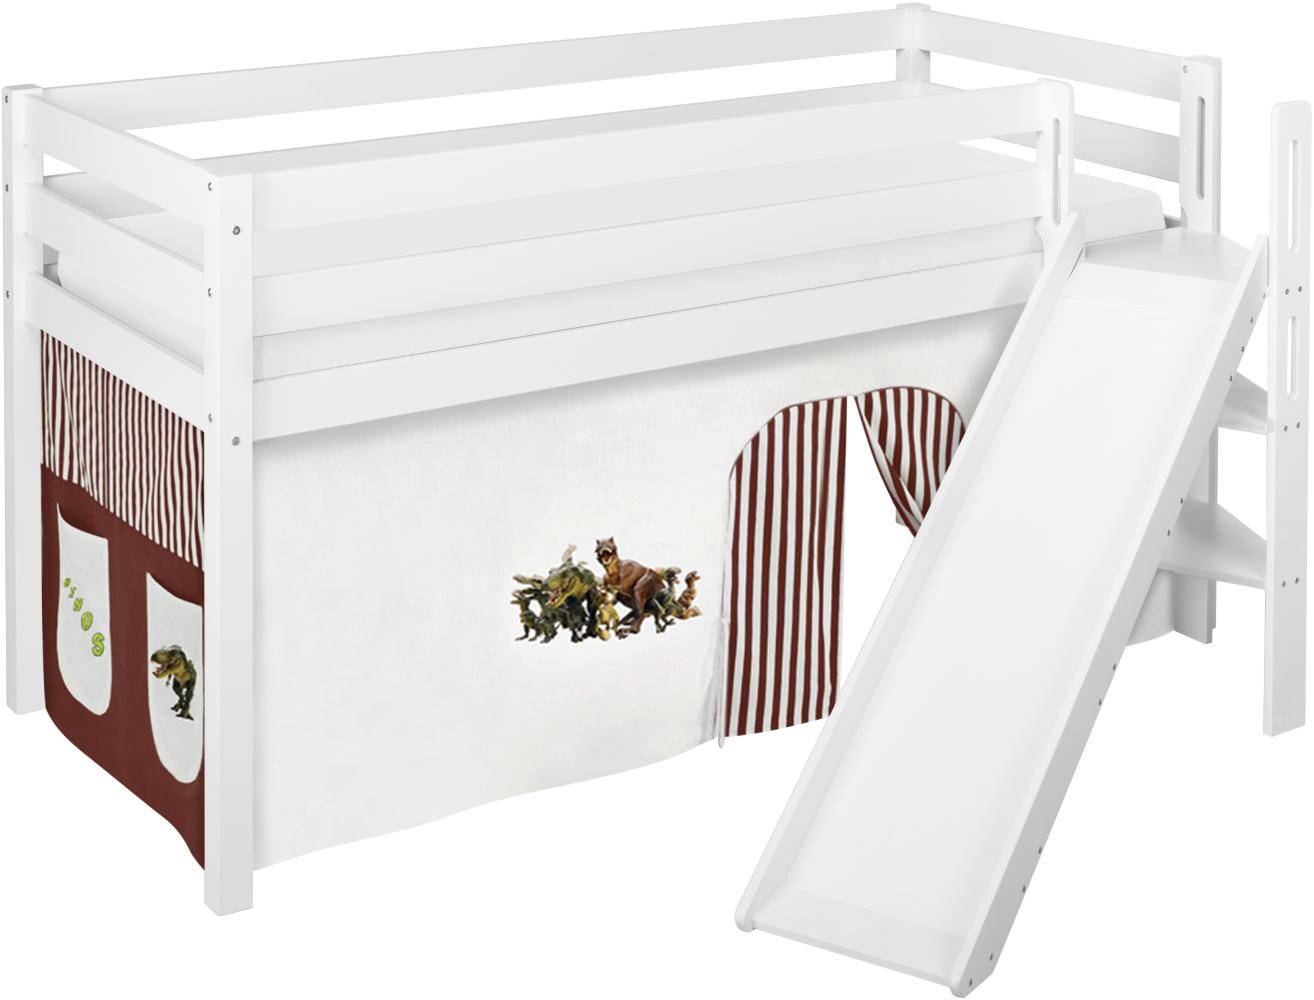 Lilokids 'Jelle' Spielbett 90 x 190 cm, Dinos Braun Beige, Kiefer massiv, mit schräger Rutsche und Vorhang Bild 1